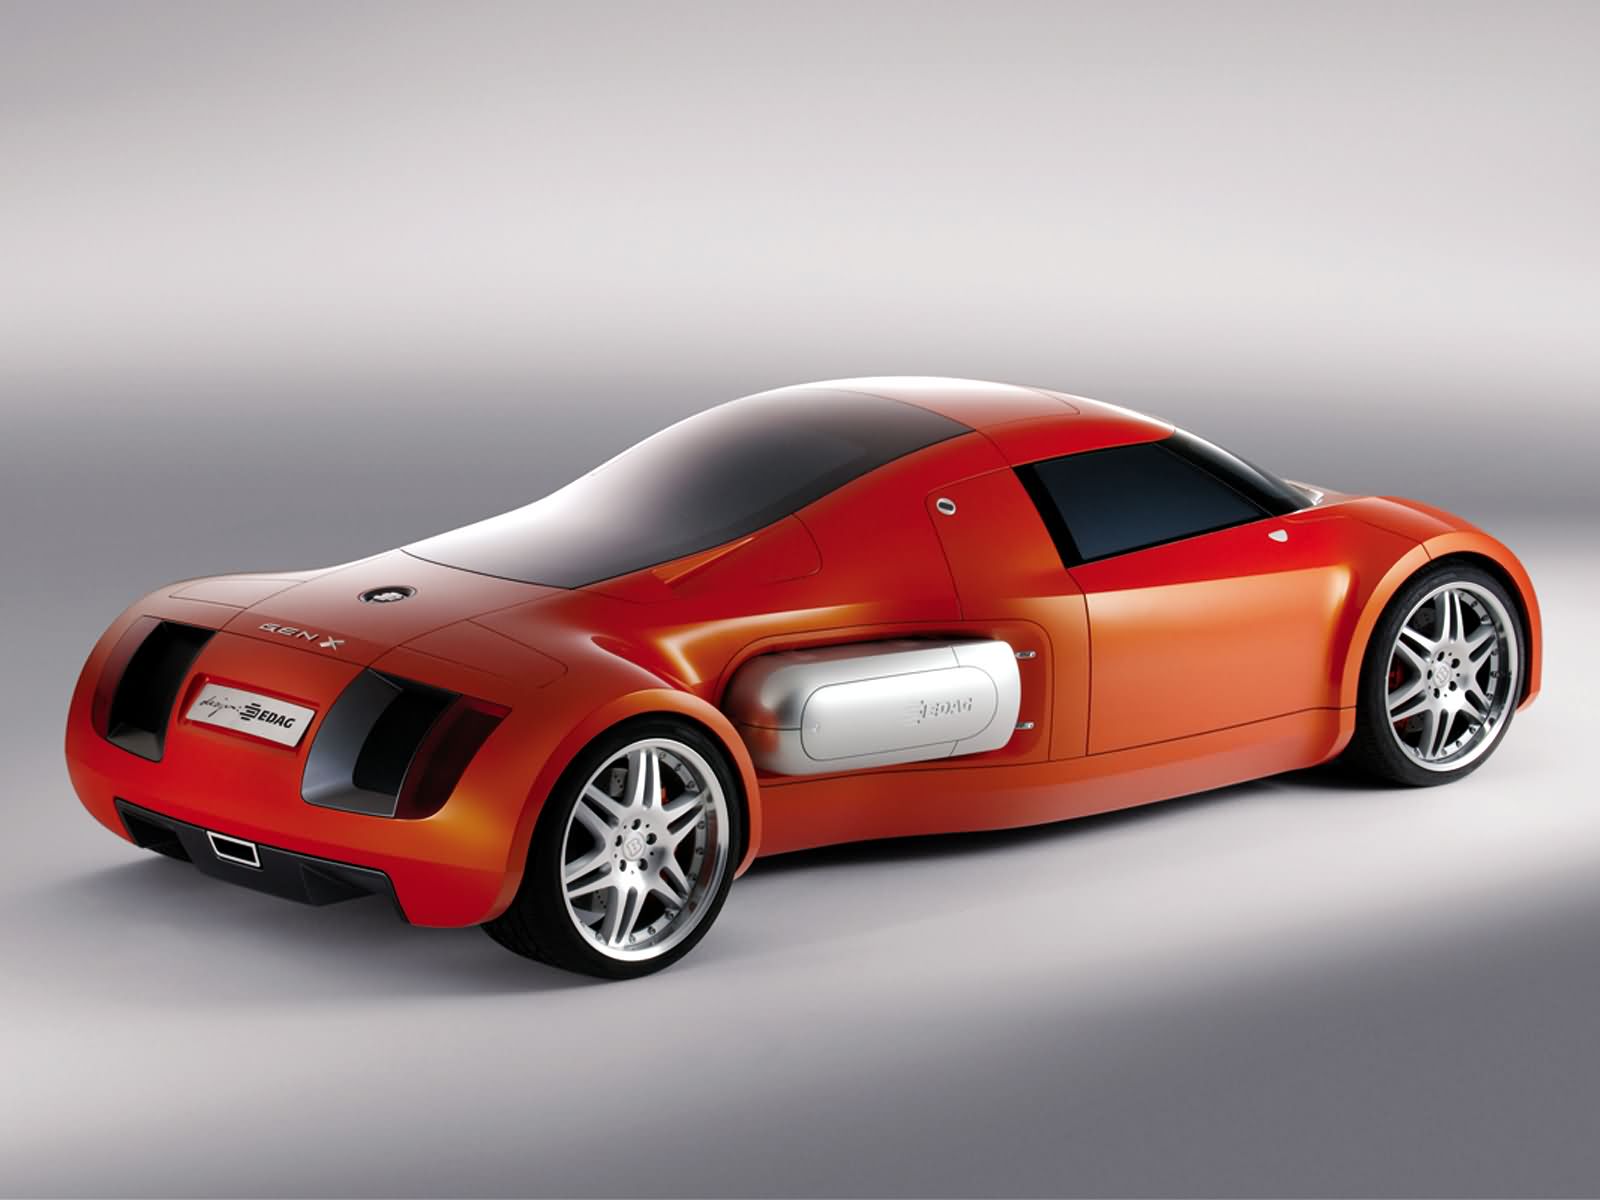 2004, Edag, Genx, Concept, Supercar, Fs Wallpaper